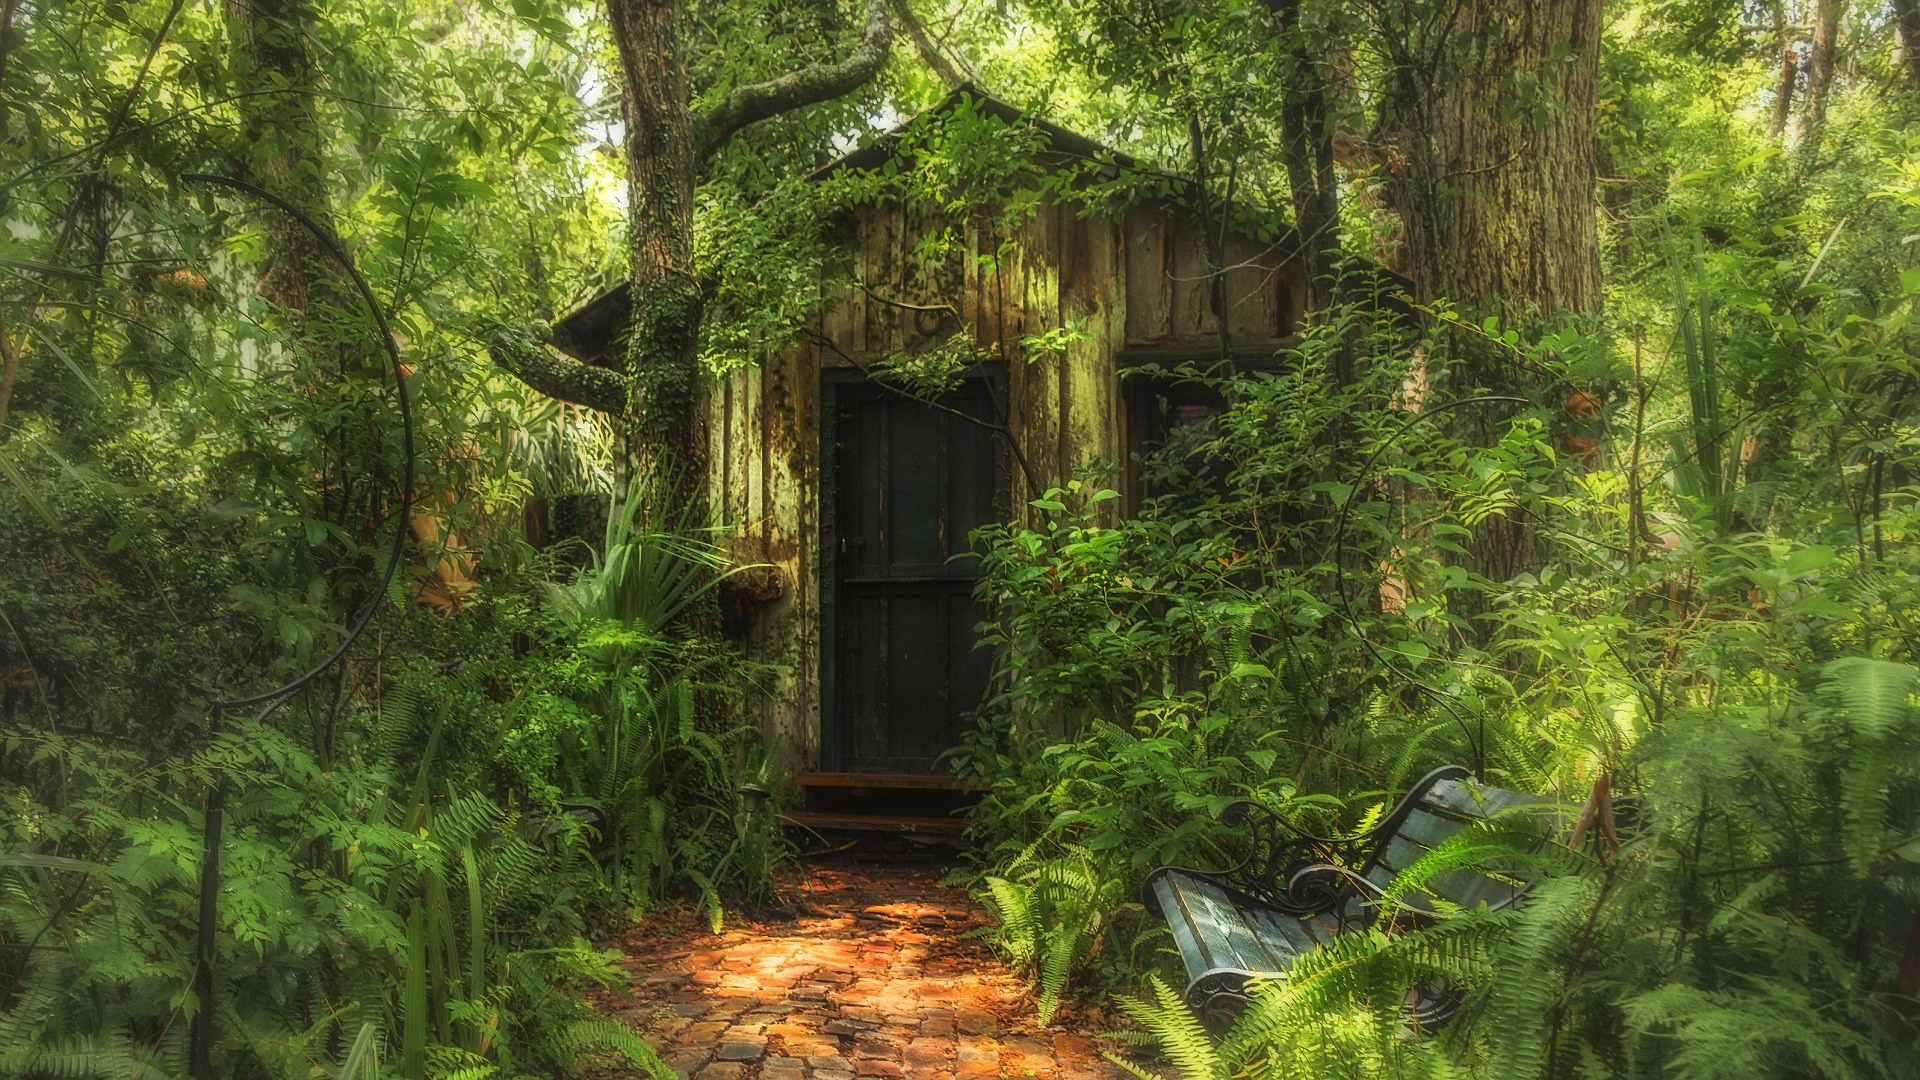 Затерянный темна. Домик в дремучем лесу. Дом в густом лесу. Заброшенное здание в дремучем лесу. Затерянный дом в лесу.